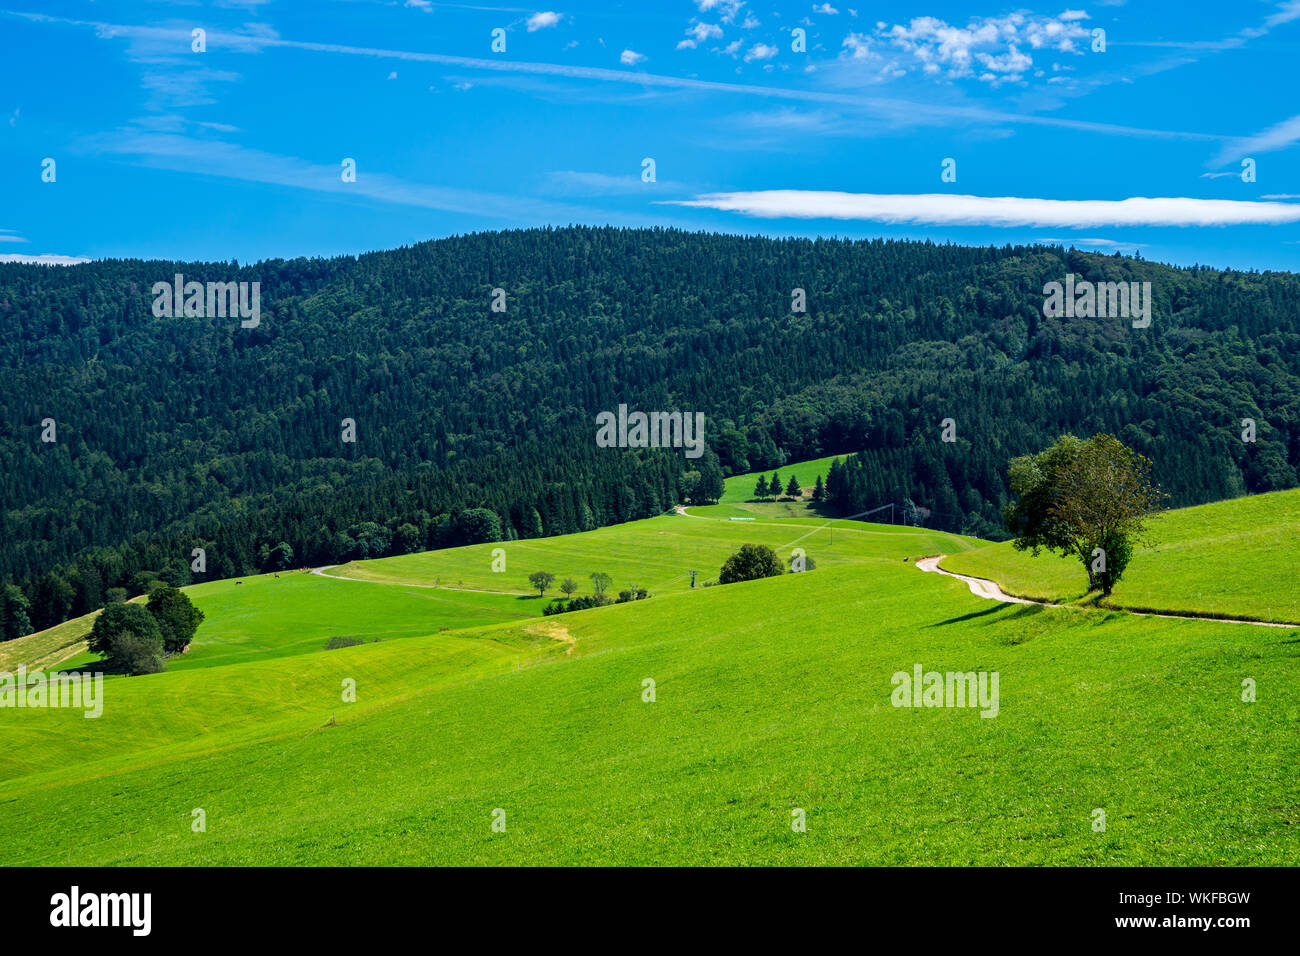 Germania, ricoperta di boschi verdi montagne della Foresta nera in natura paesaggio di schauinsland, meta di escursioni per i turisti nei pressi di Freiburg im Breisgau in summe Foto Stock